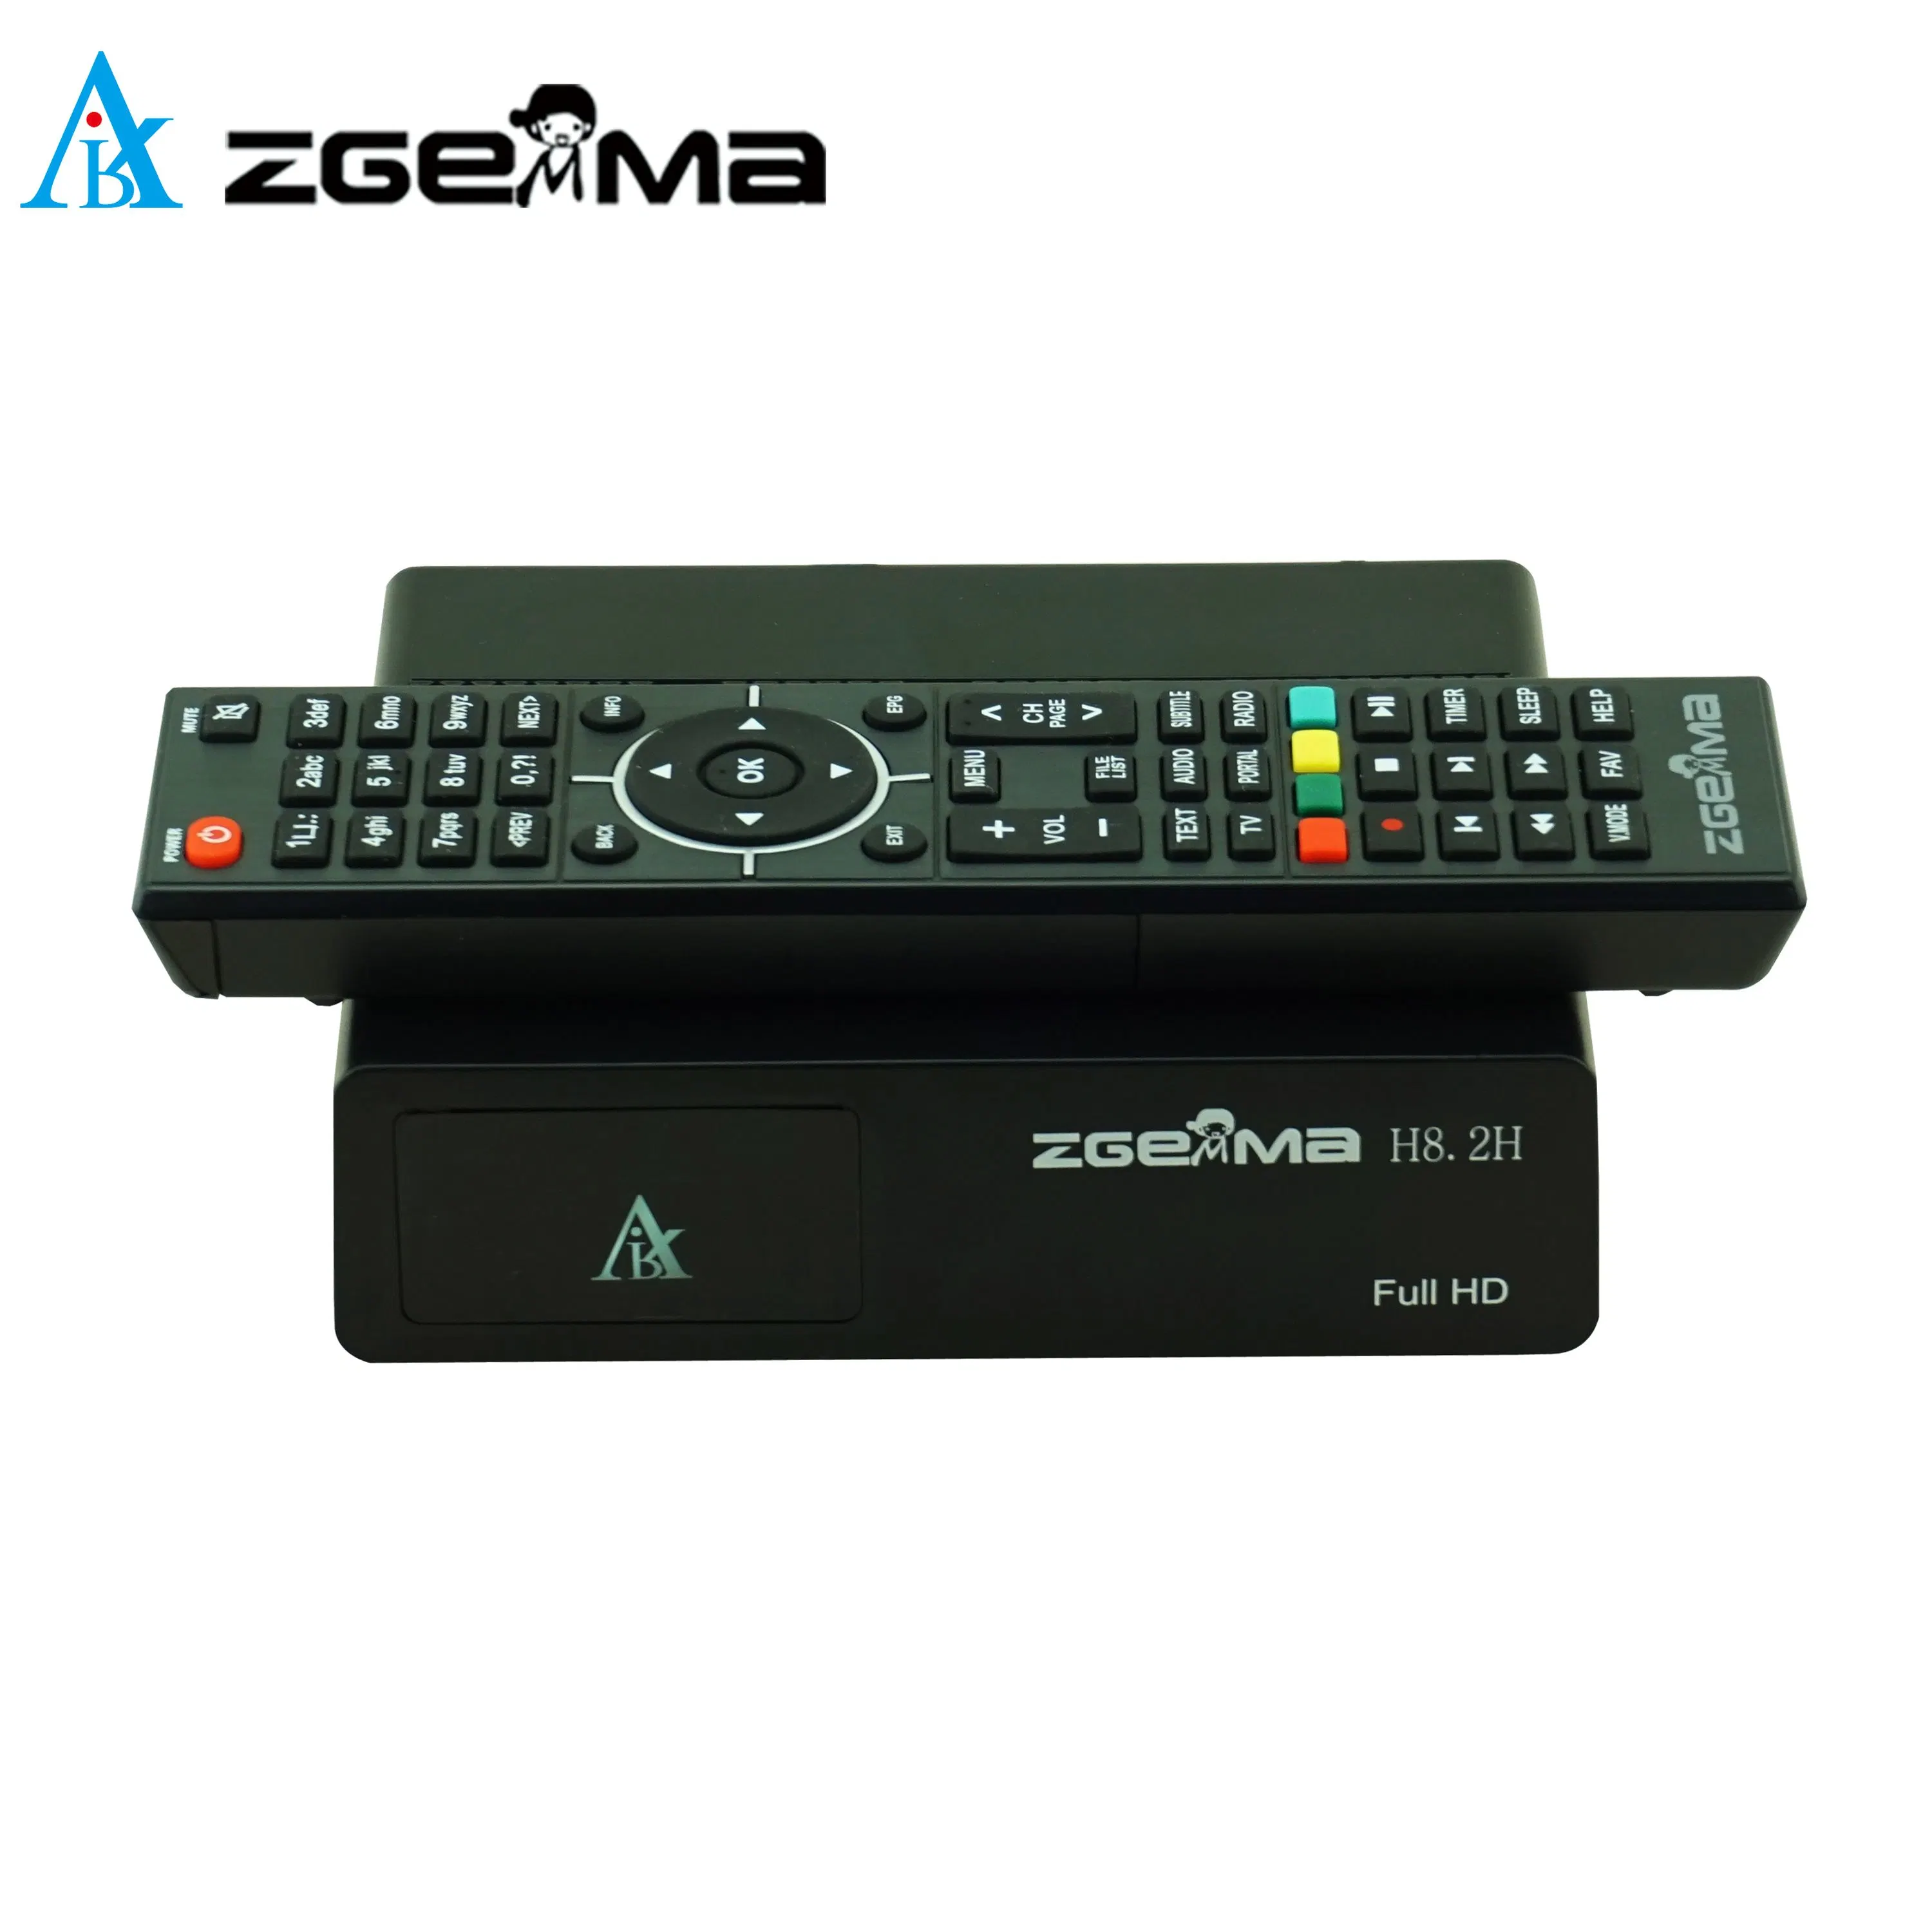 Caja de TV por satélite Zgemma H8,2h - solución de entretenimiento perfecta con Resolución Full HD 1080p